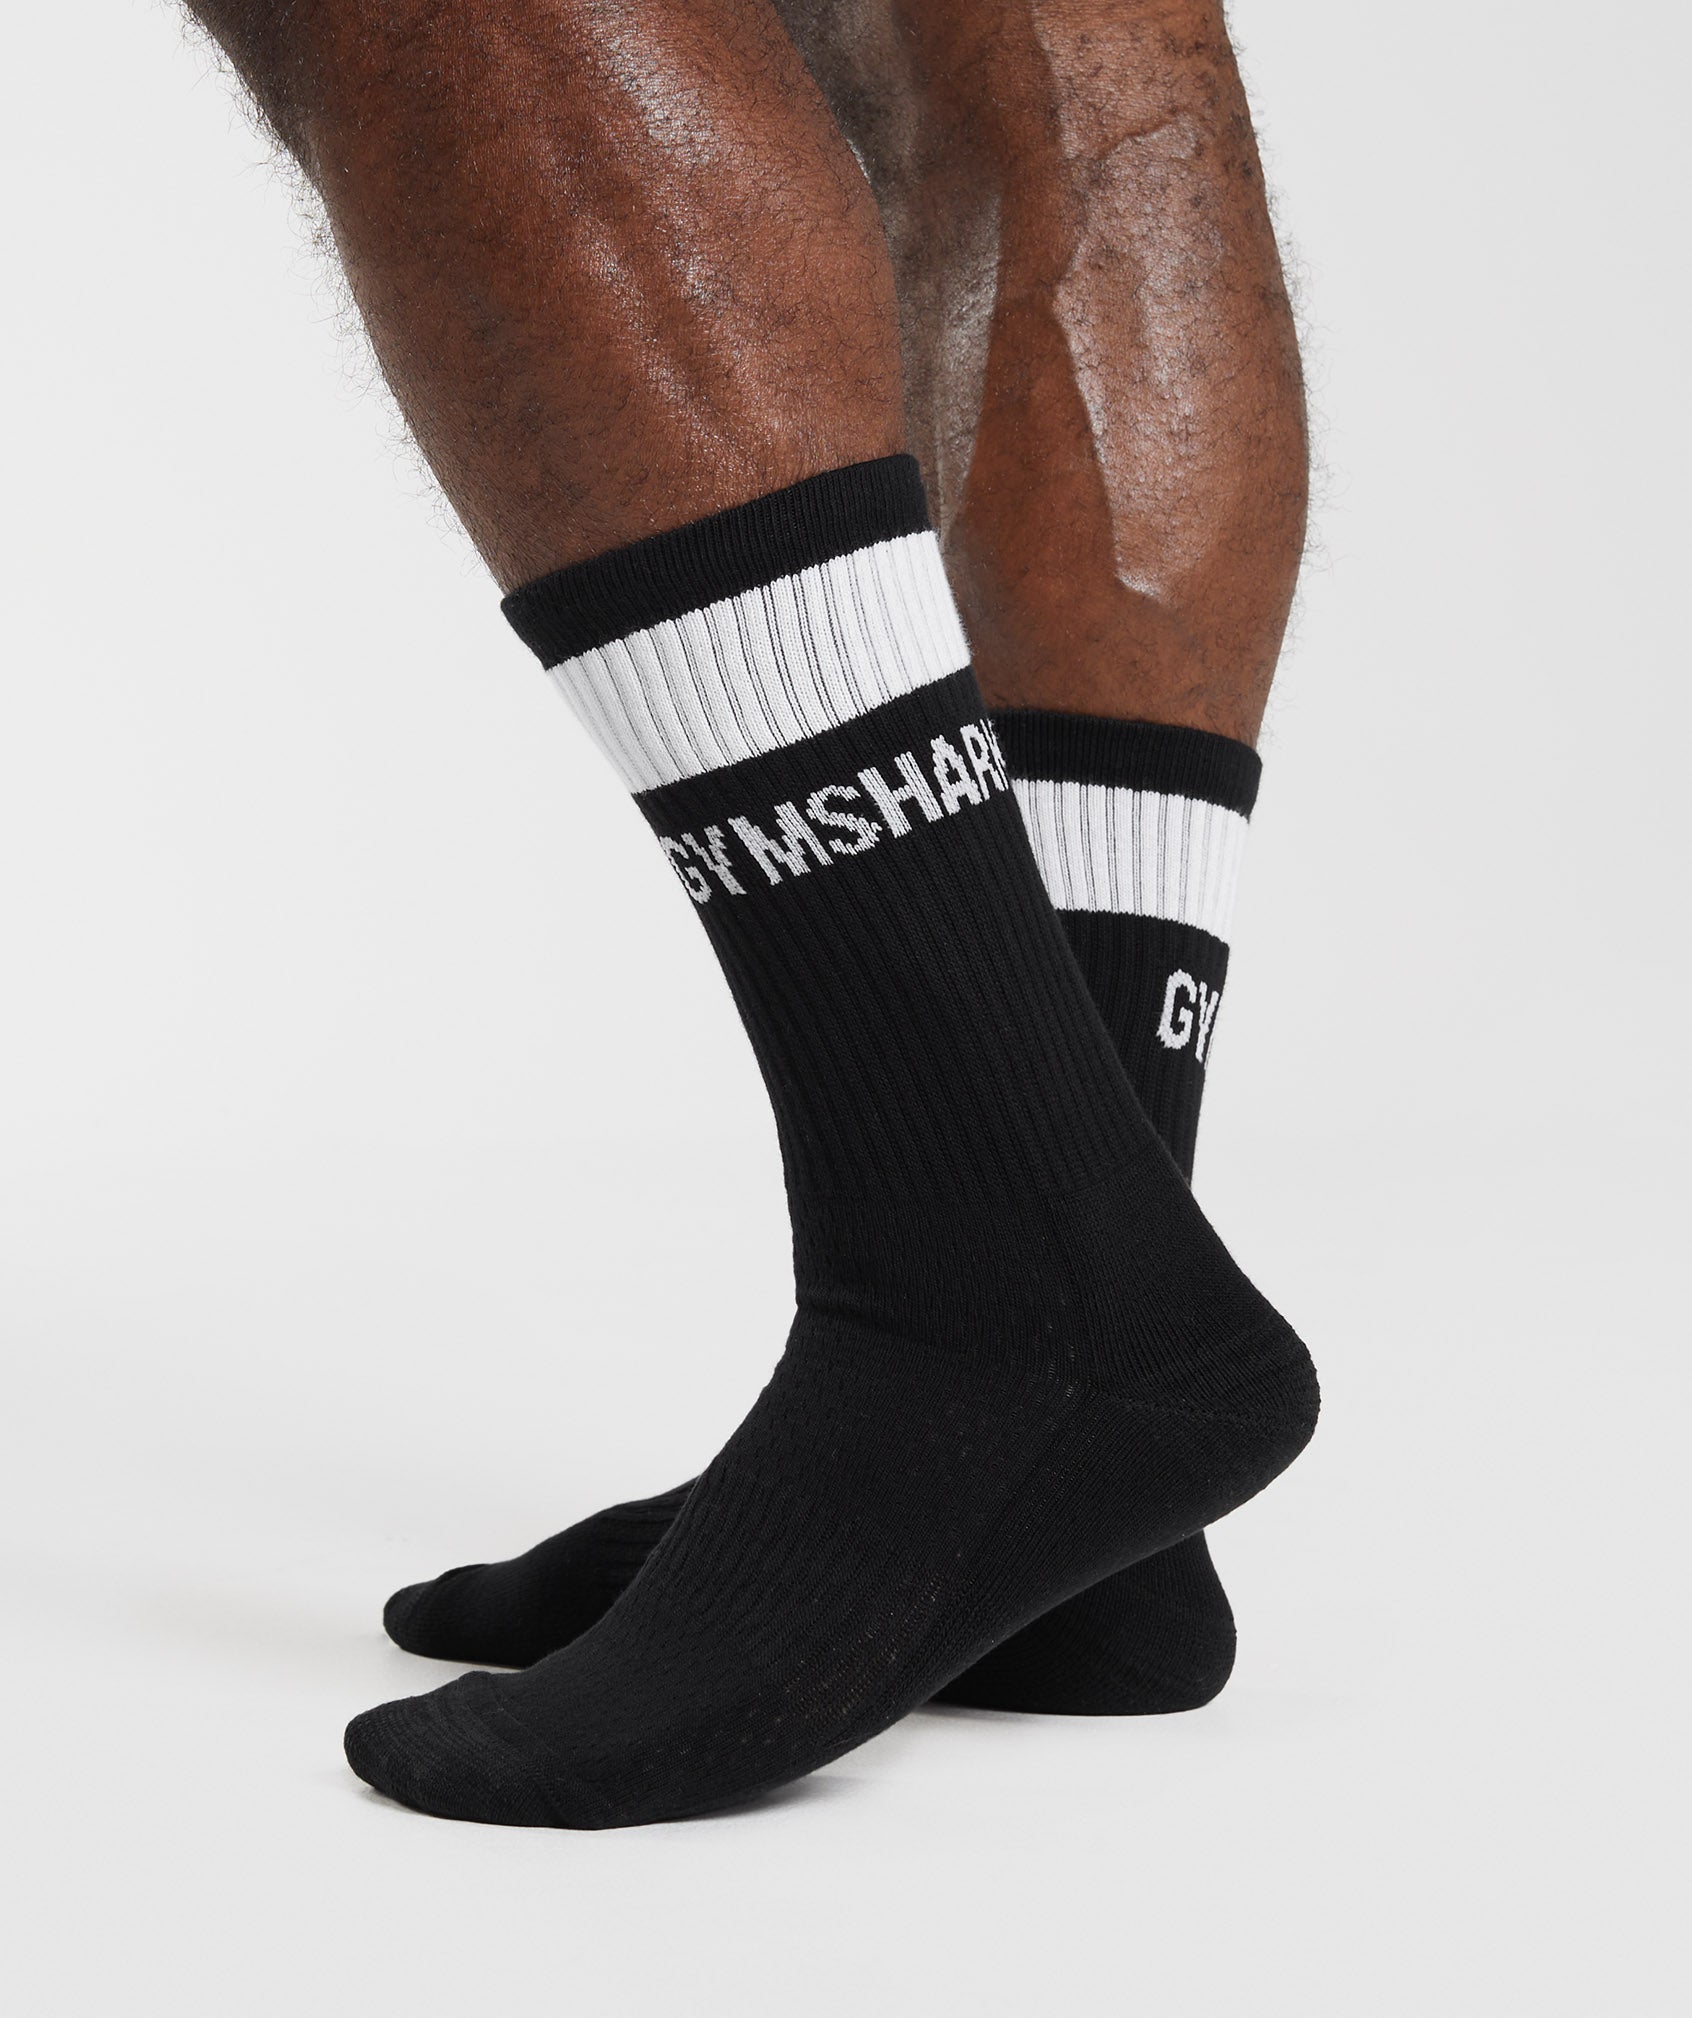 Premium Jacquard Single Socks in Black/White - view 3